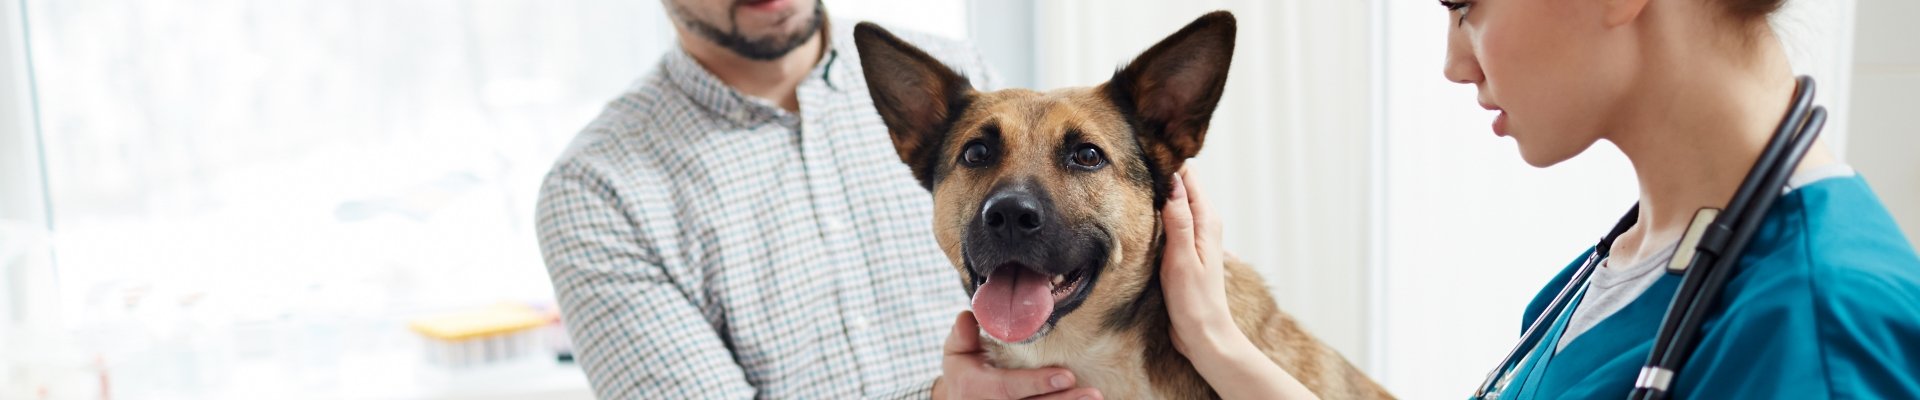 Una veterinaria examina a un perro grande mientras el dueño del perro la apoya